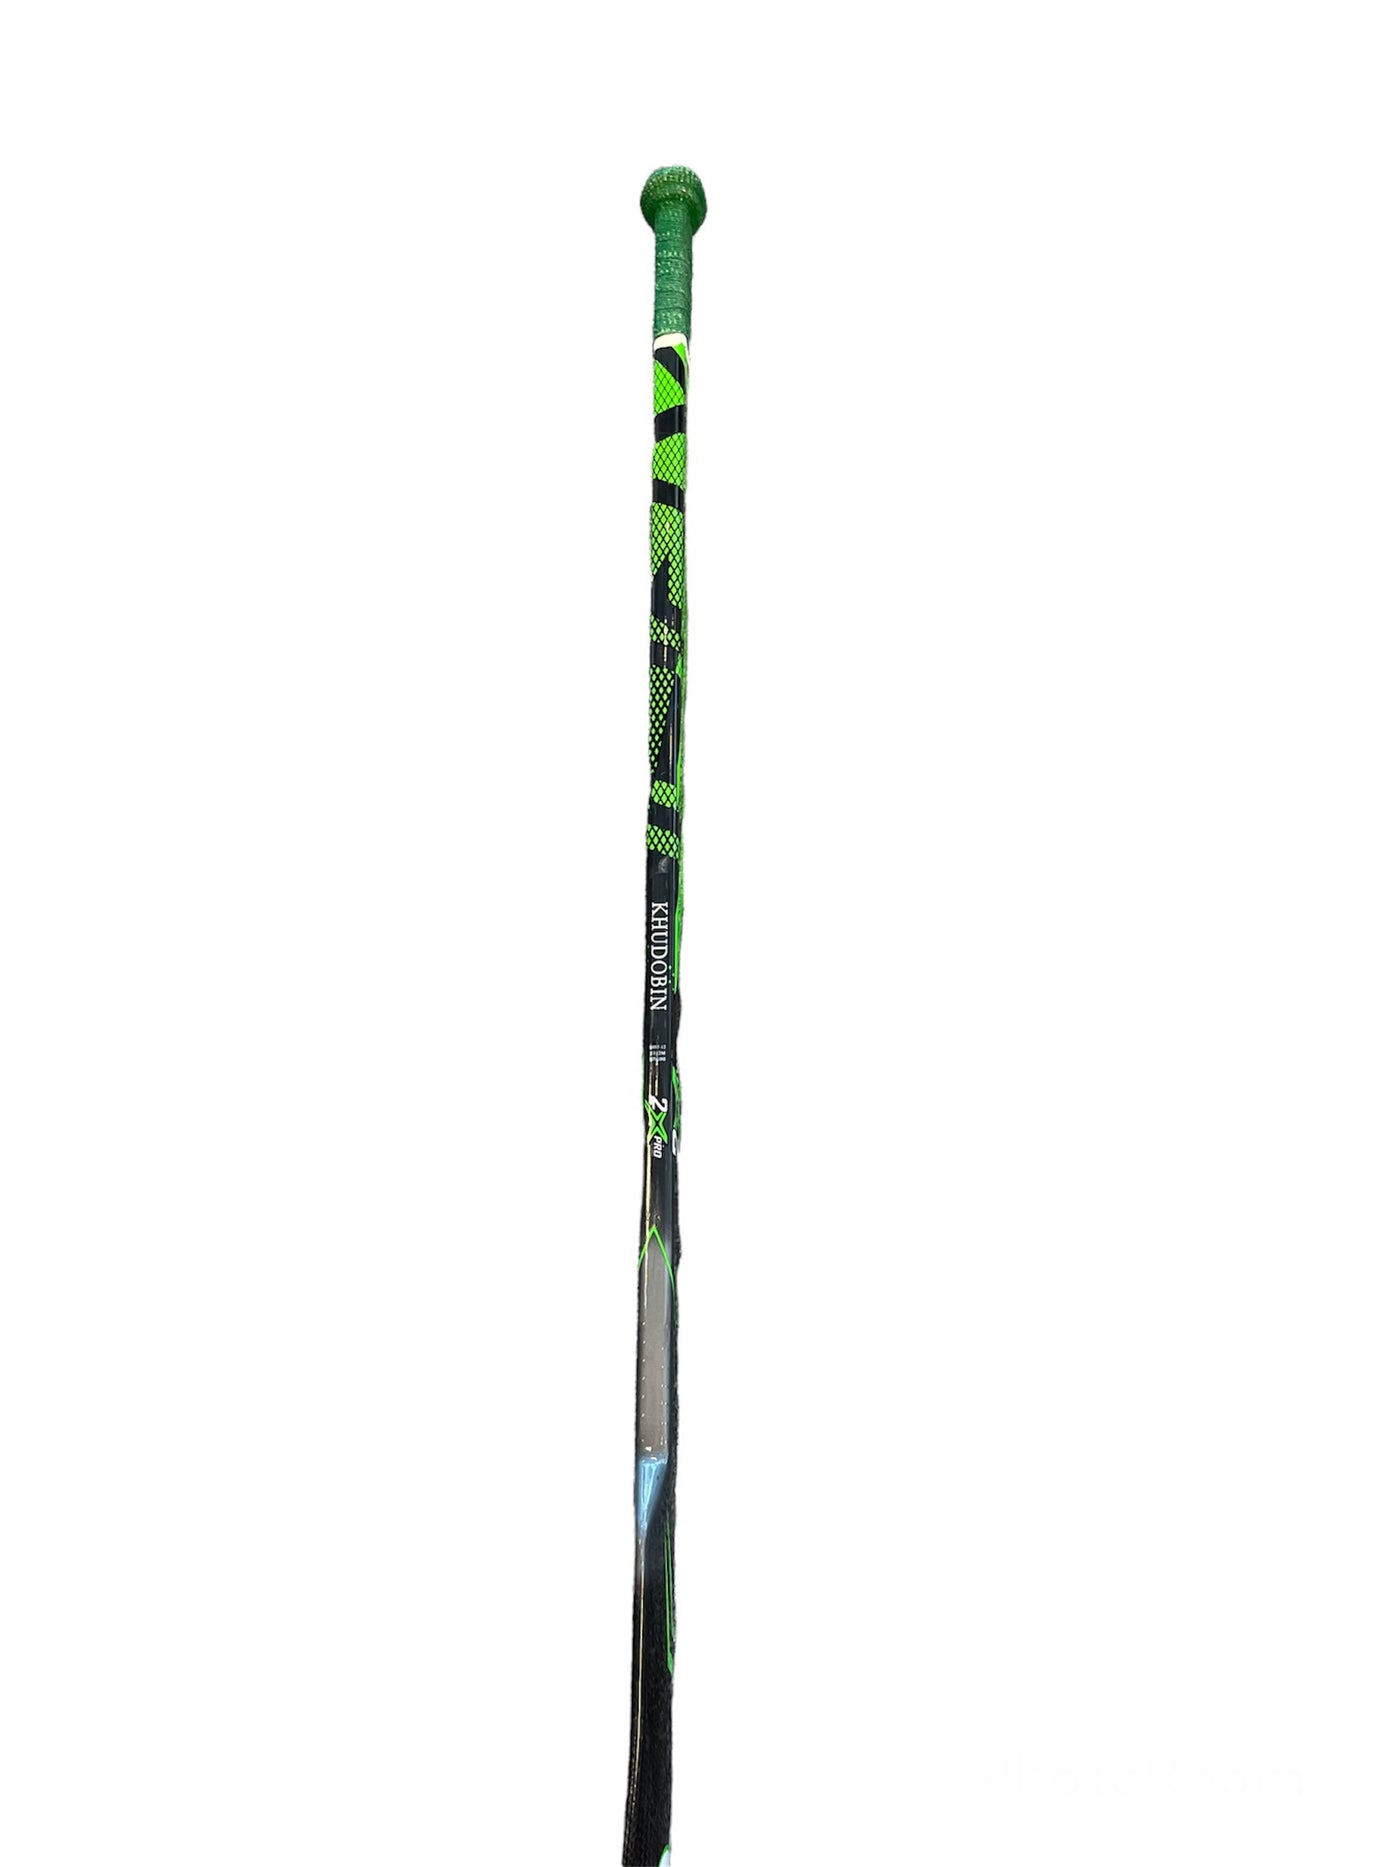 anton khudobin game used goalie stick handle